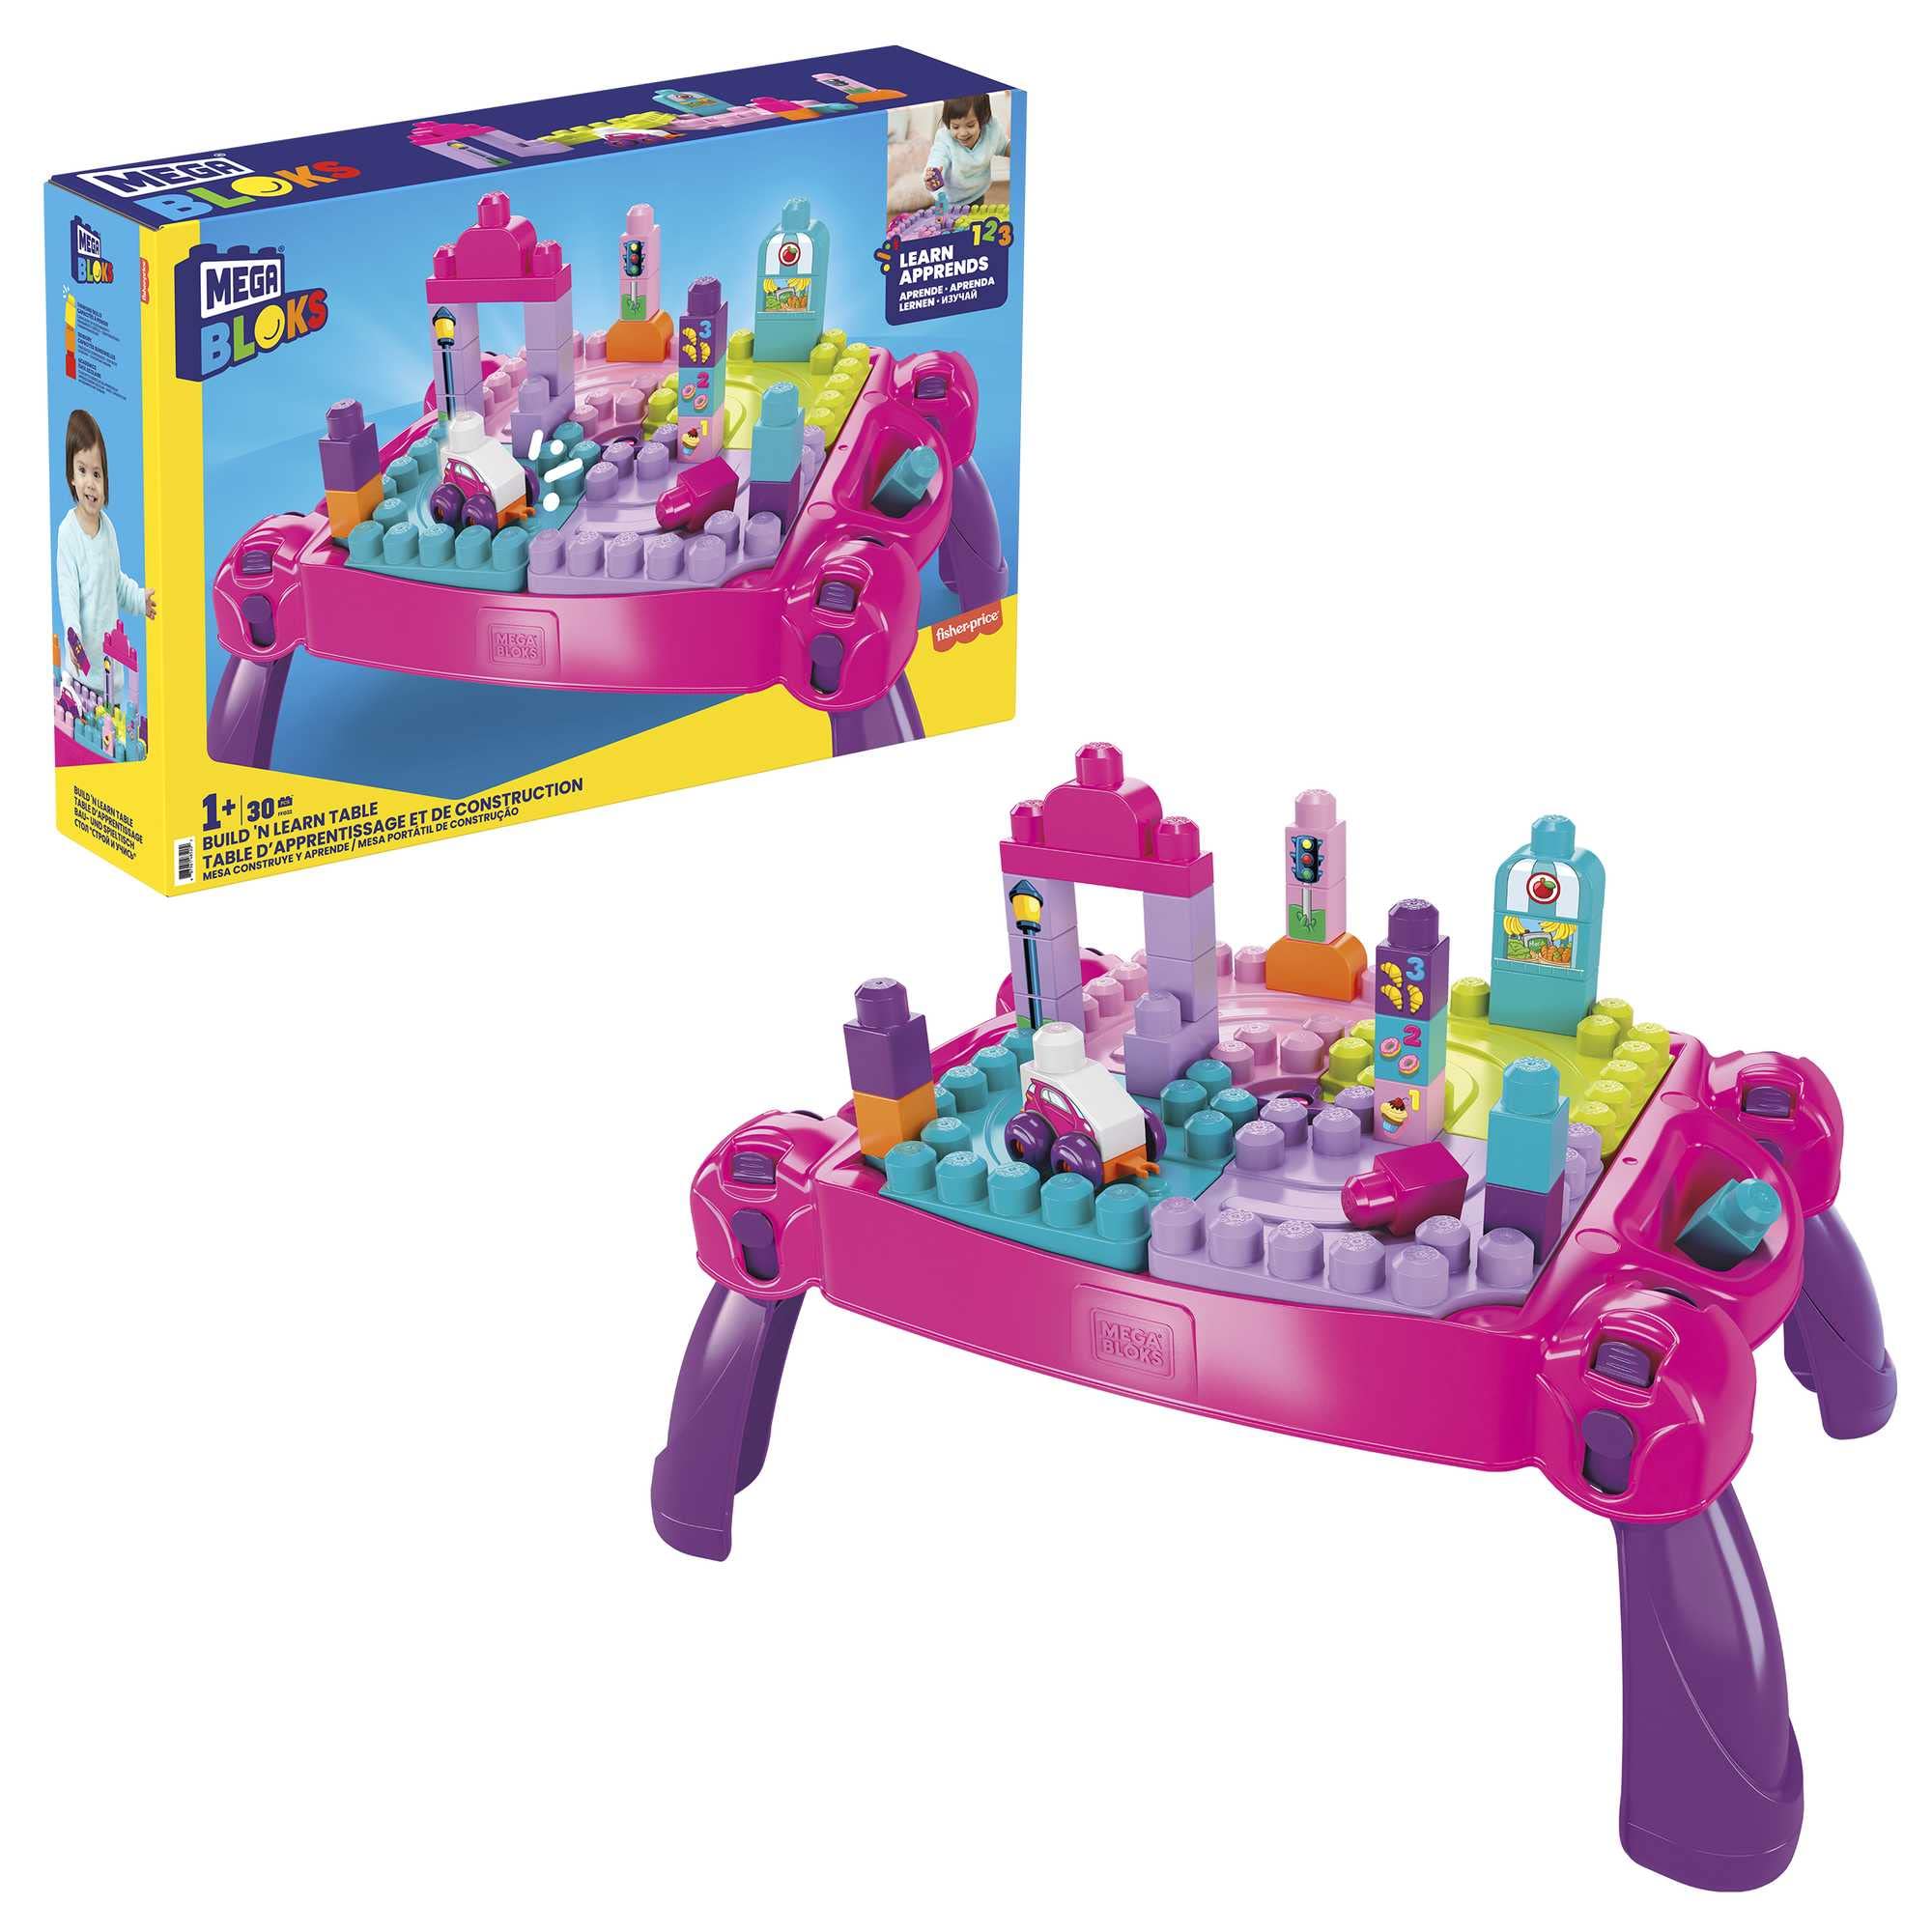 MEGA Bloks FFG22 - Bau- und Stapelspaß, Bau- und Spieltisch, inklusive 30 Bausteine, rosa, Spielzeug ab 1 Jahr